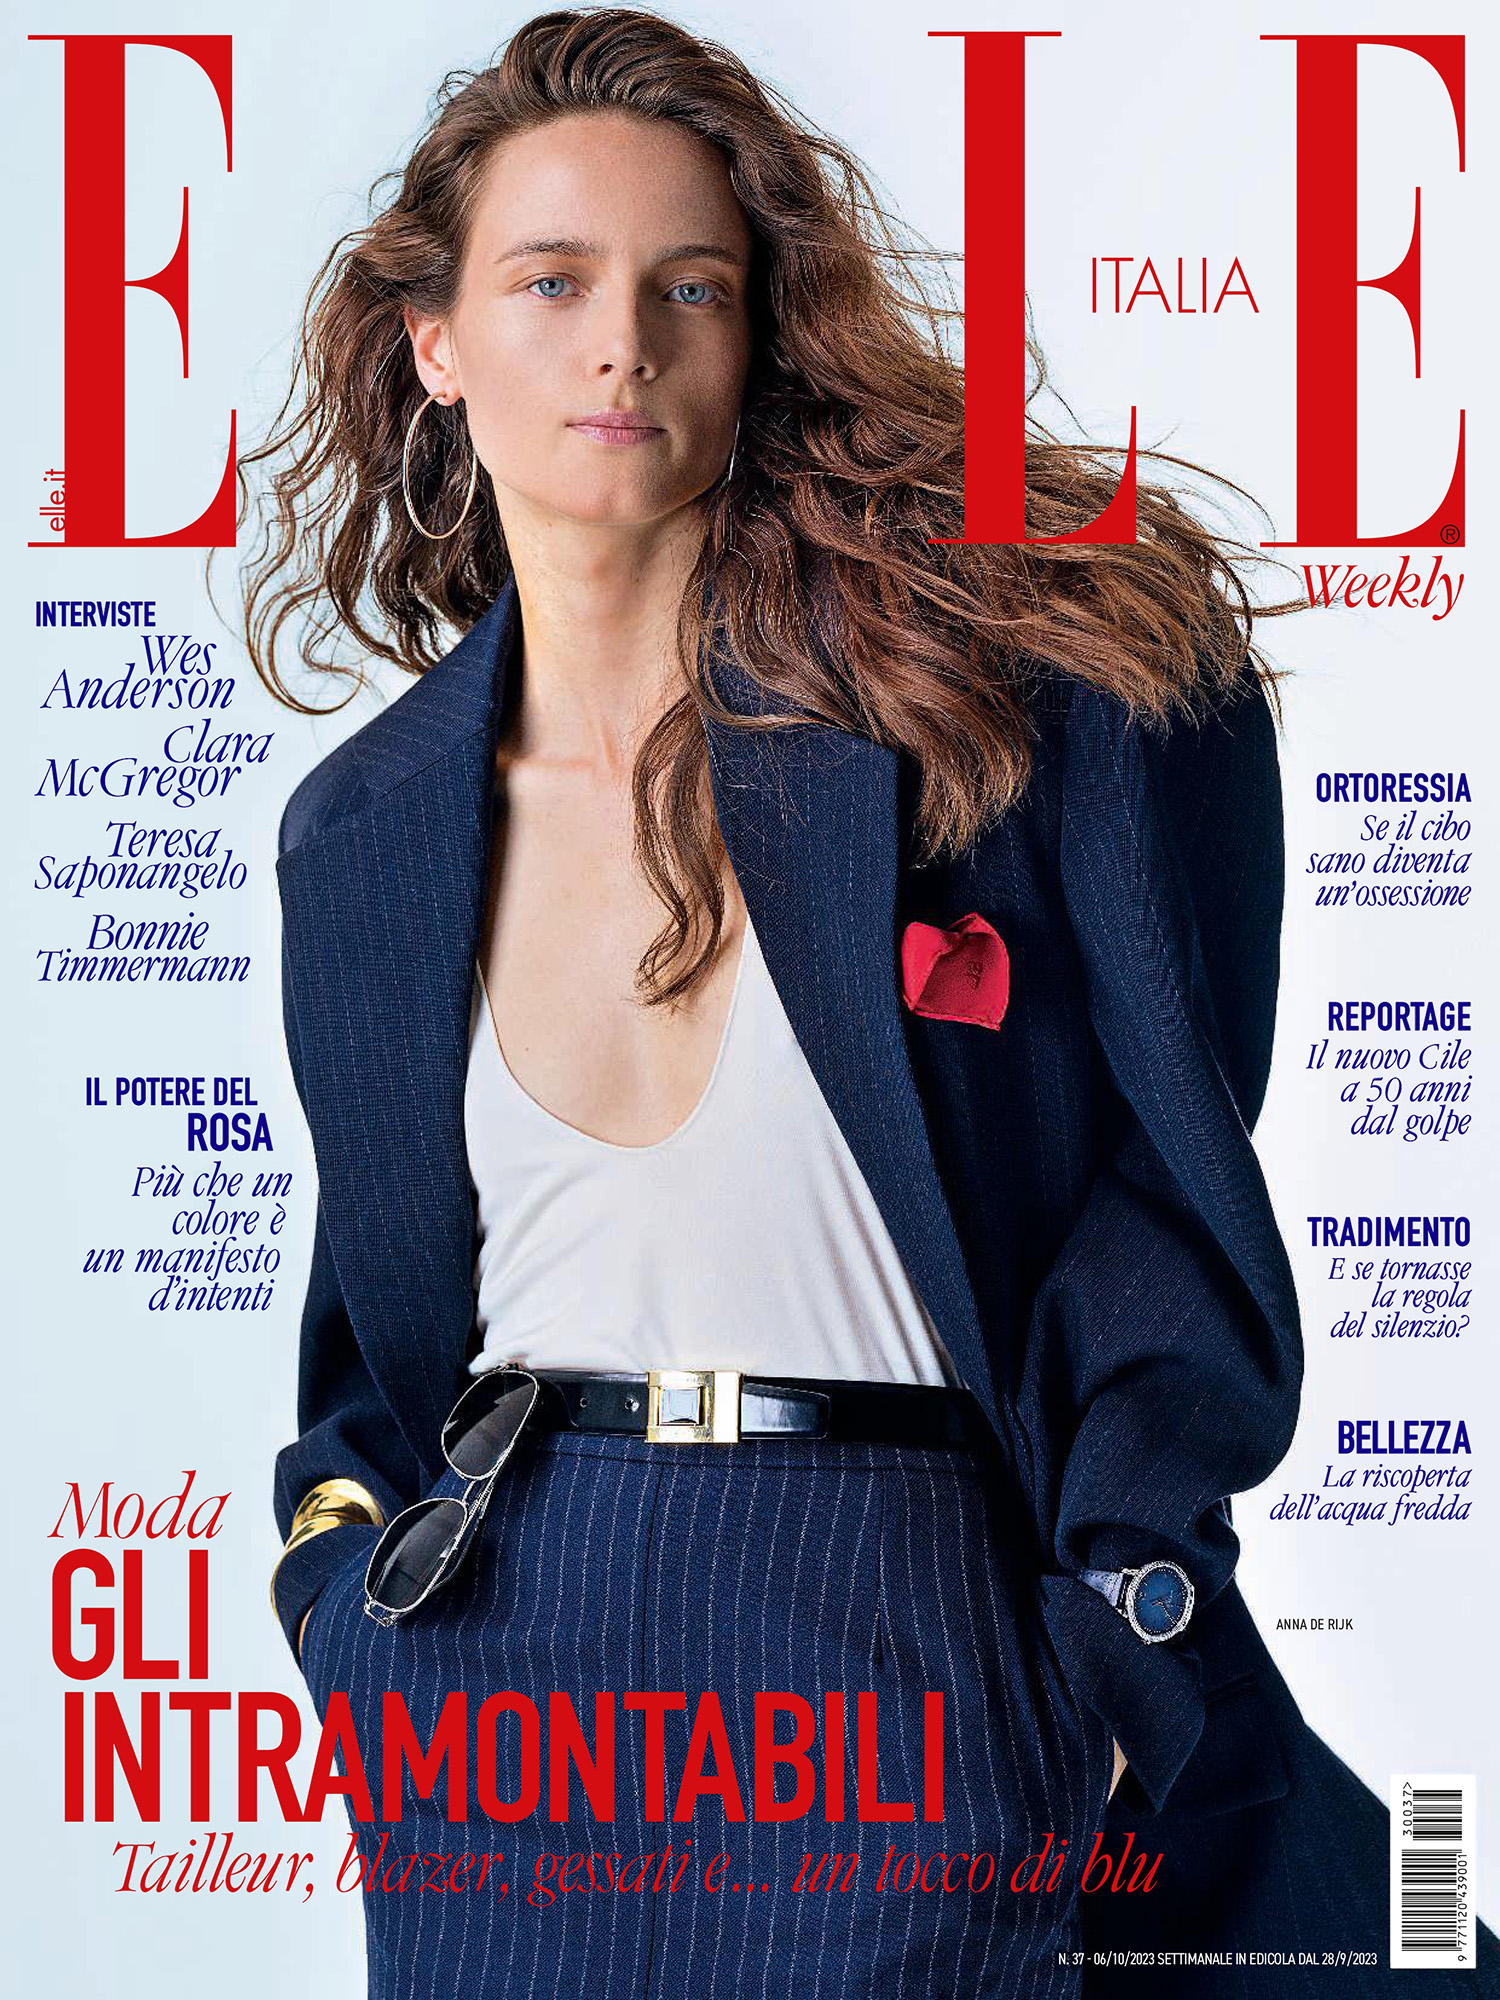 Anna de Rijk covers Elle Italia September 28th, 2023 by Gilles Bensimon